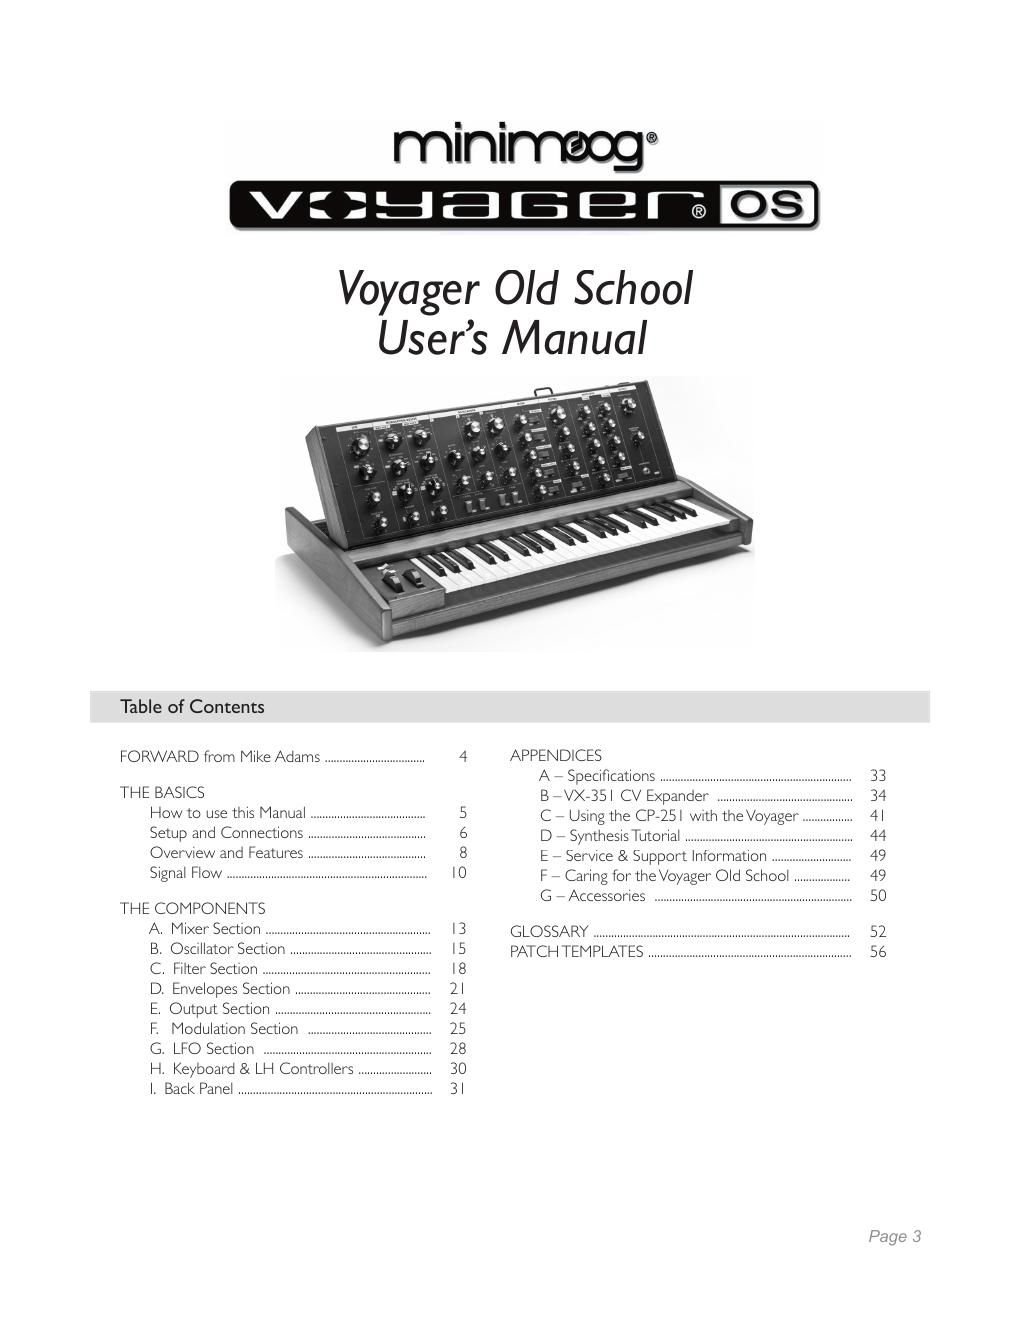 moog voyager manual pdf